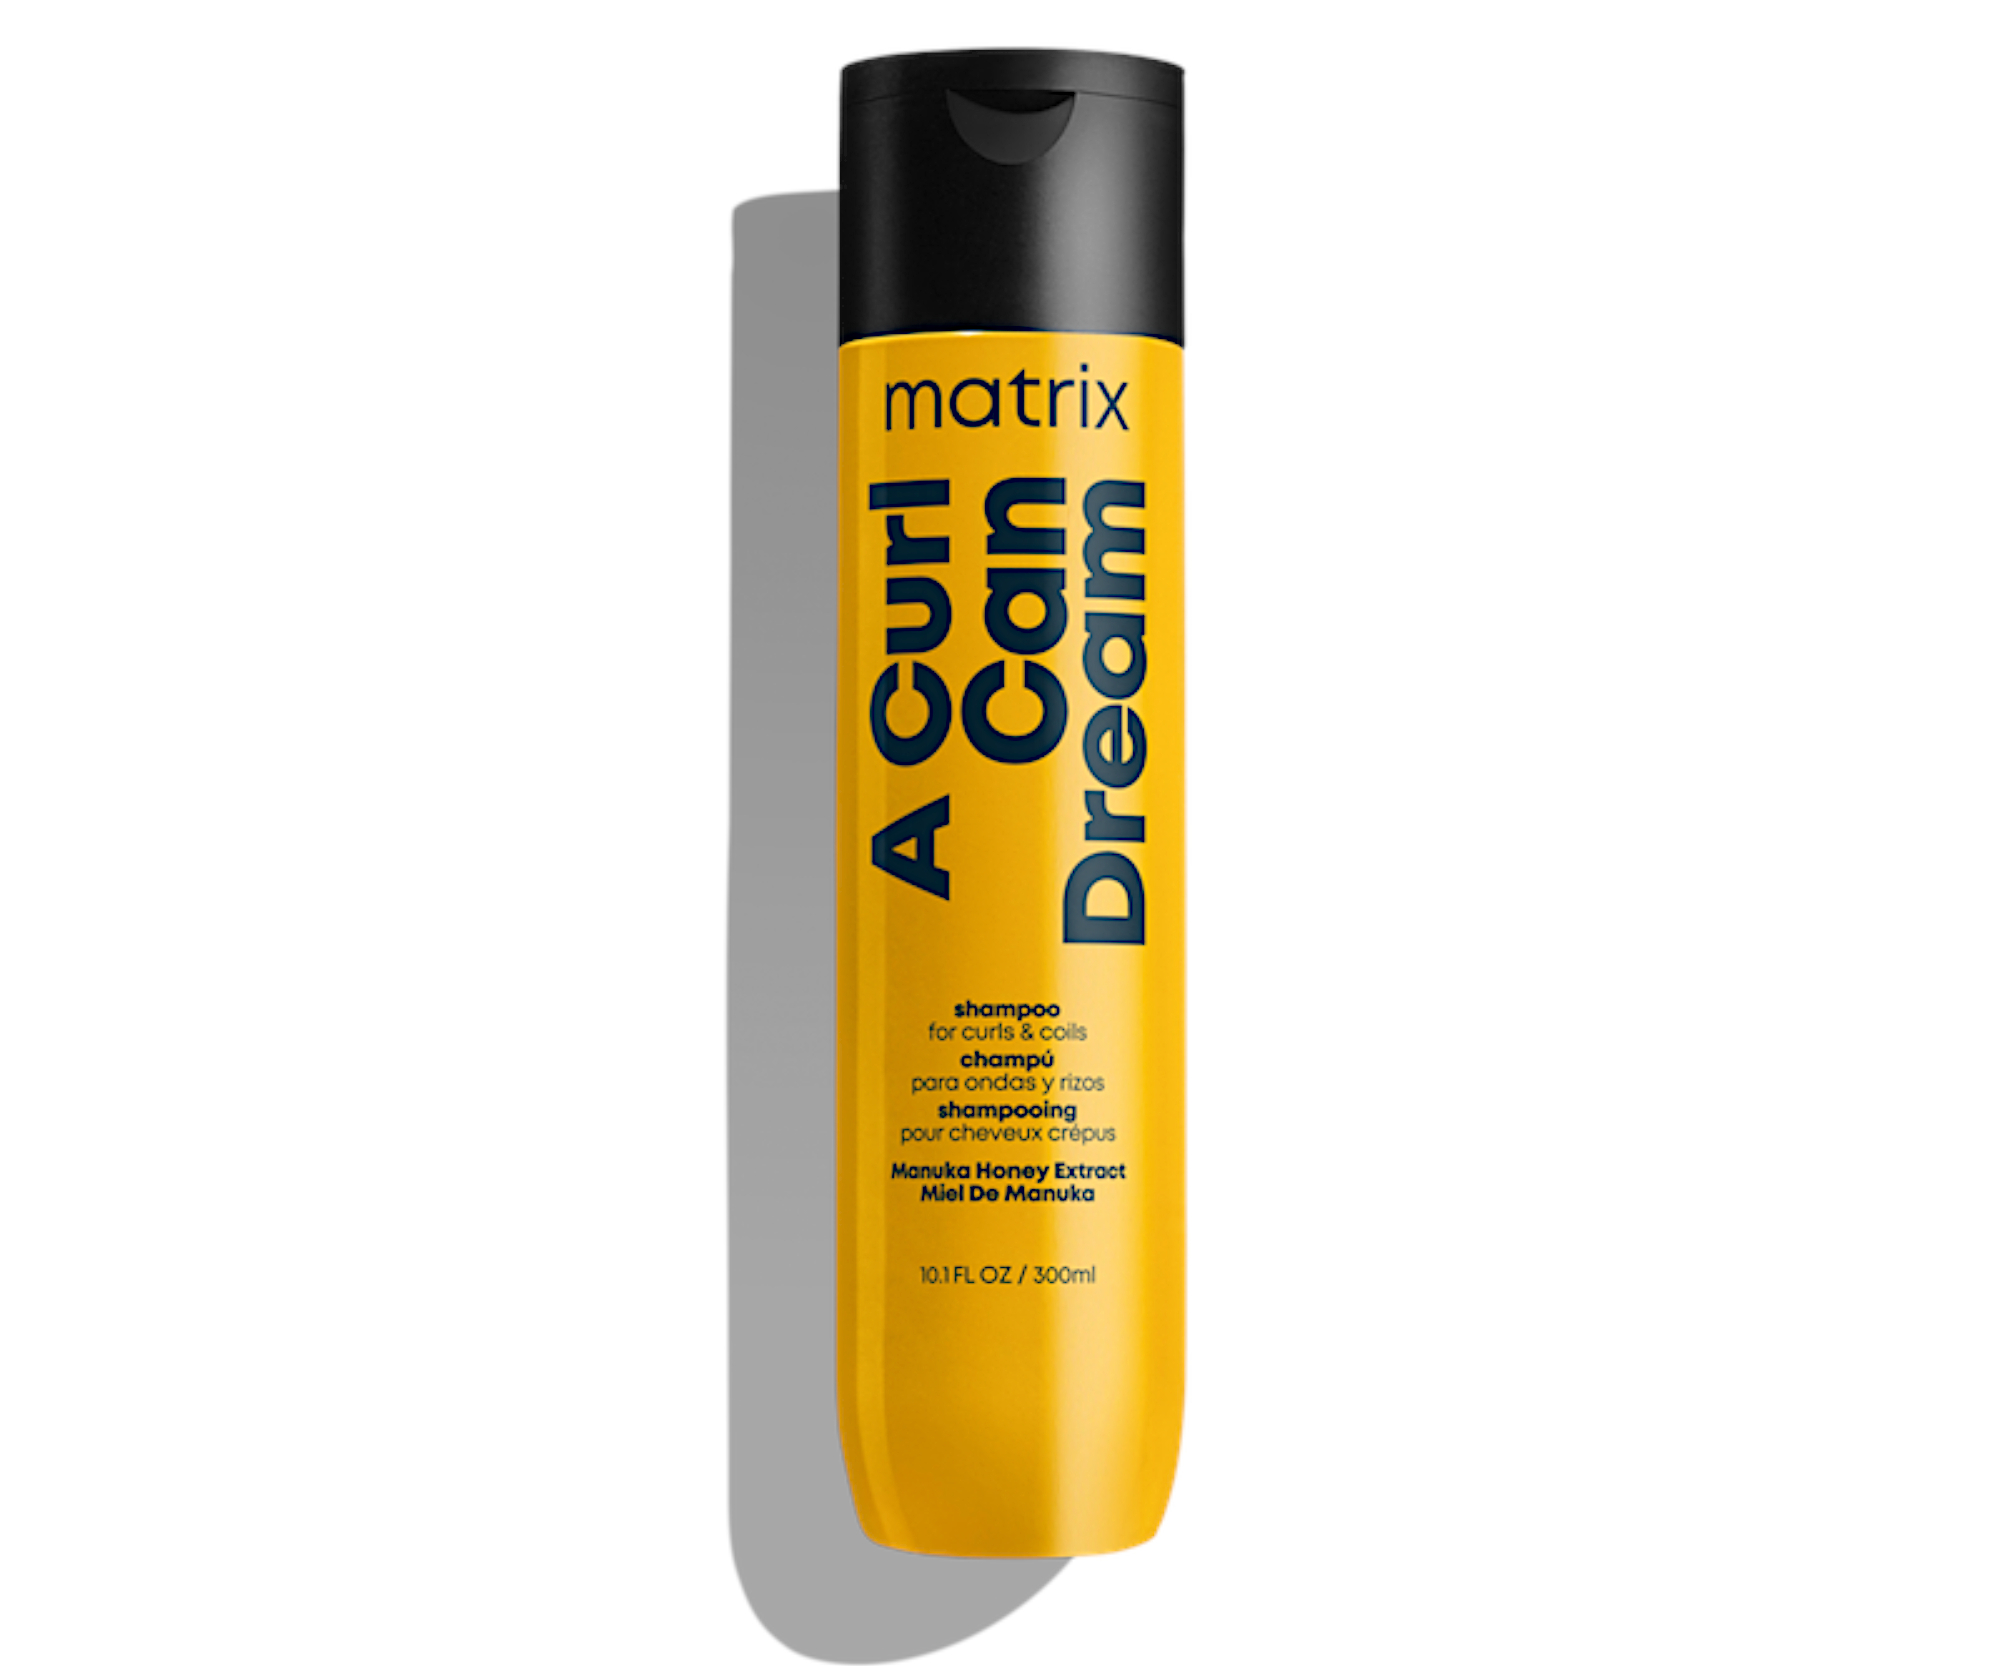 Čisticí šampon pro vlnité a kudrnaté vlasy Matrix A Curl Can Dream - 300 ml + dárek zdarma